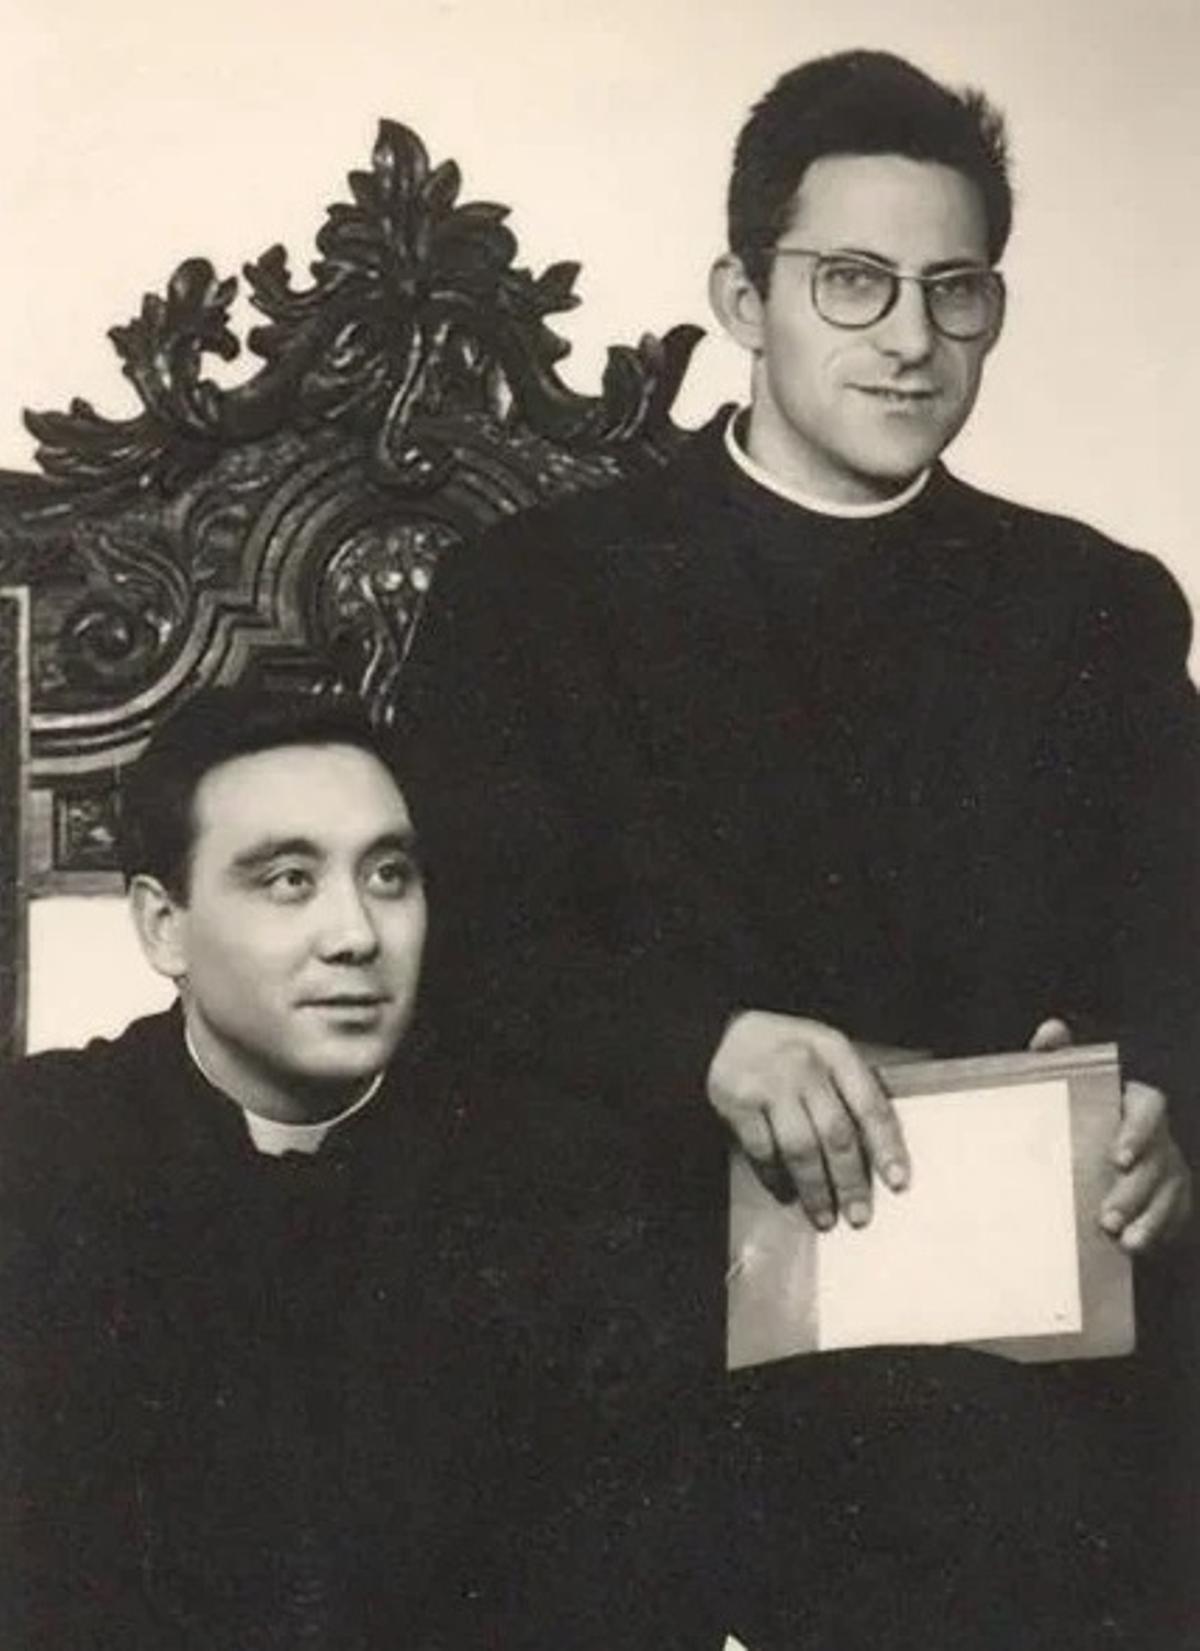 Ángel Silva y Ángel García -de pie-, en una foto de seminaristas.